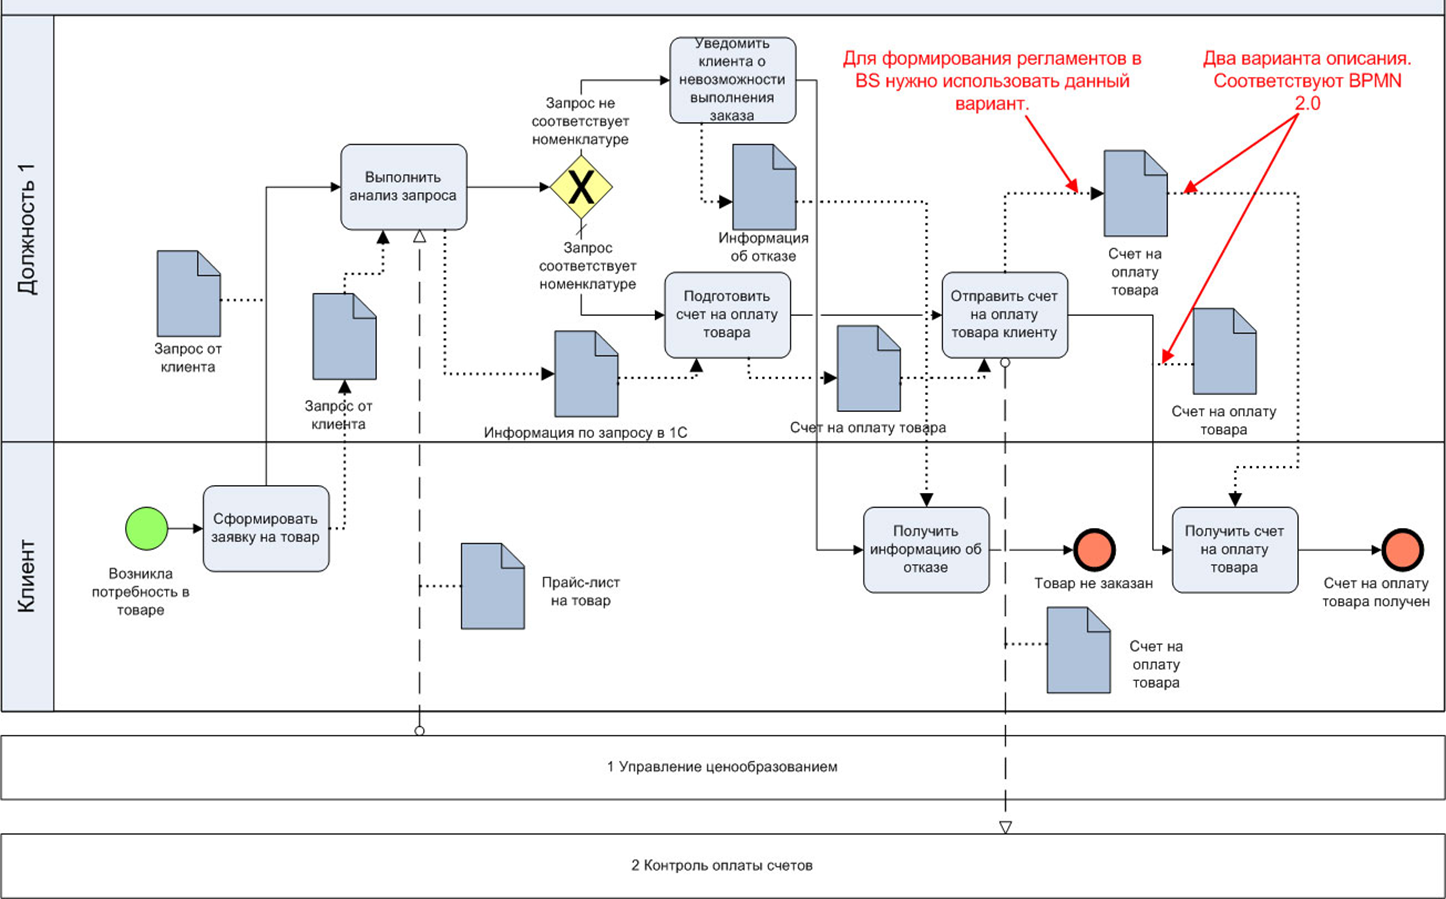 Схема процесса в нотации BPMN. Диаграмма бизнес процессов BPMN 2.0. Схема бизнес процесса в нотации BPMN. Бизнес процесс BPMN 2.0. Что необходимо для обеспечения печати дбо